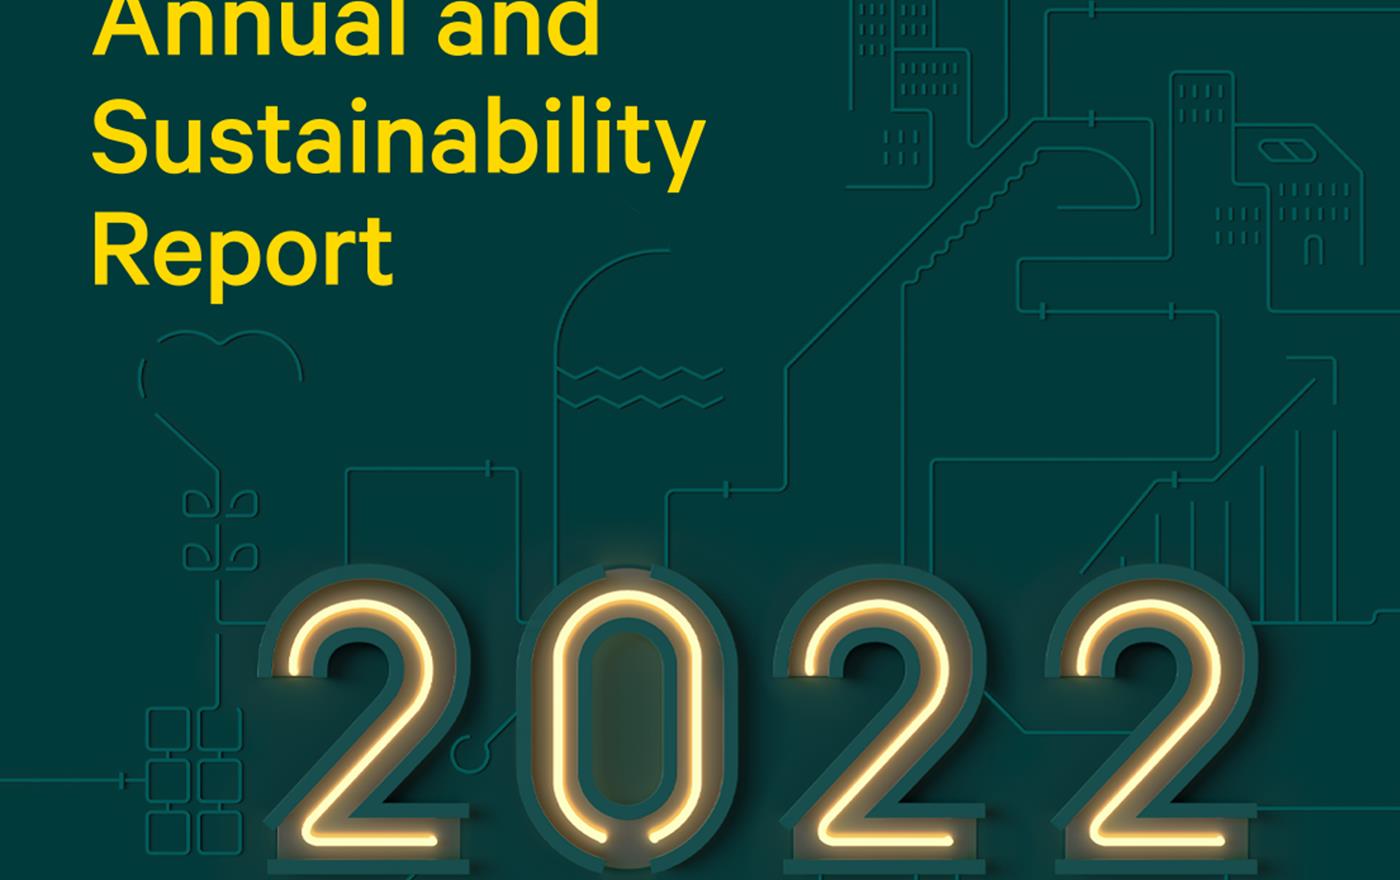 Assemblins Årsredovisning och Hållbarhetsrapport för 2022 har publicerats